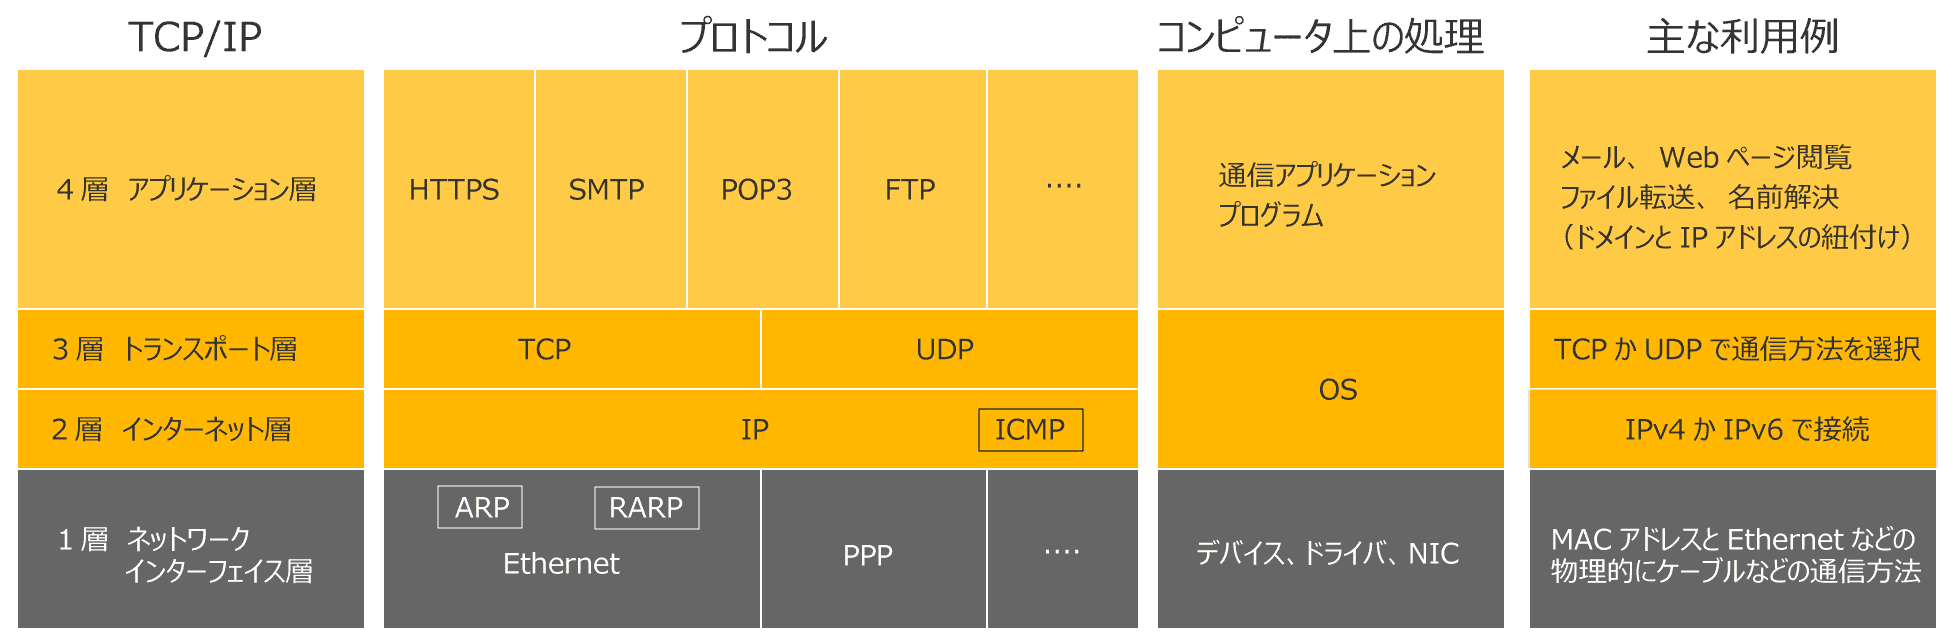 TCP/IP階層構造の図解